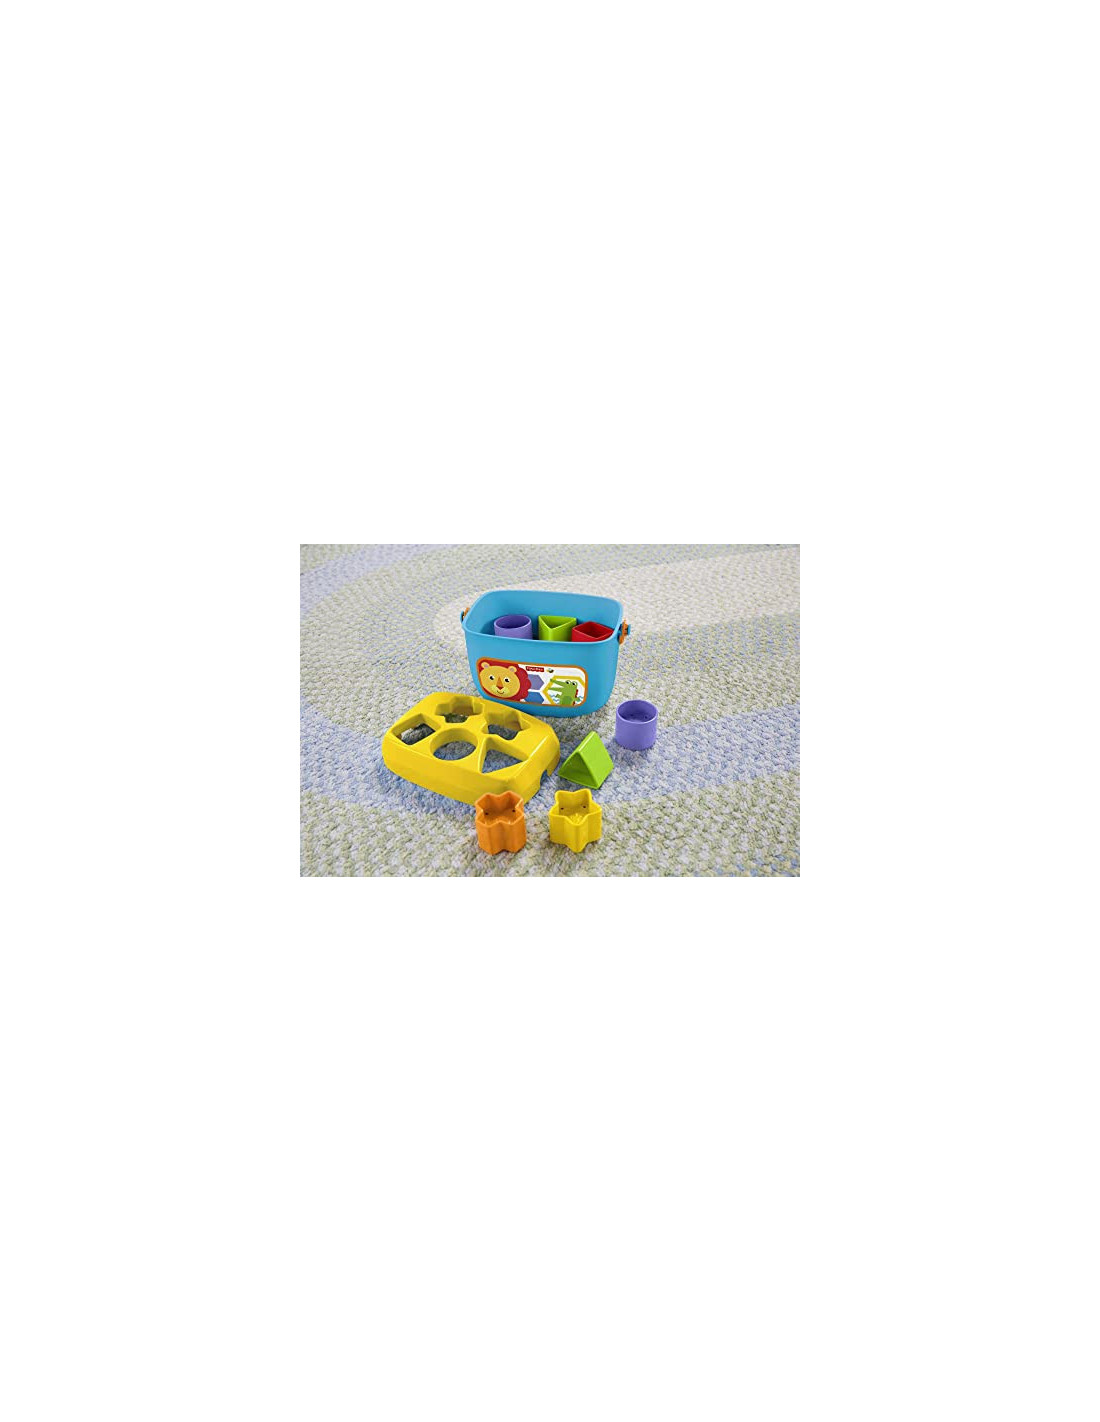 Fisher-Price - Mon trieur de formes - Jouet bébé - boite avec 10 blocs pour  apprendre à trier et à empiler - couleurs vives